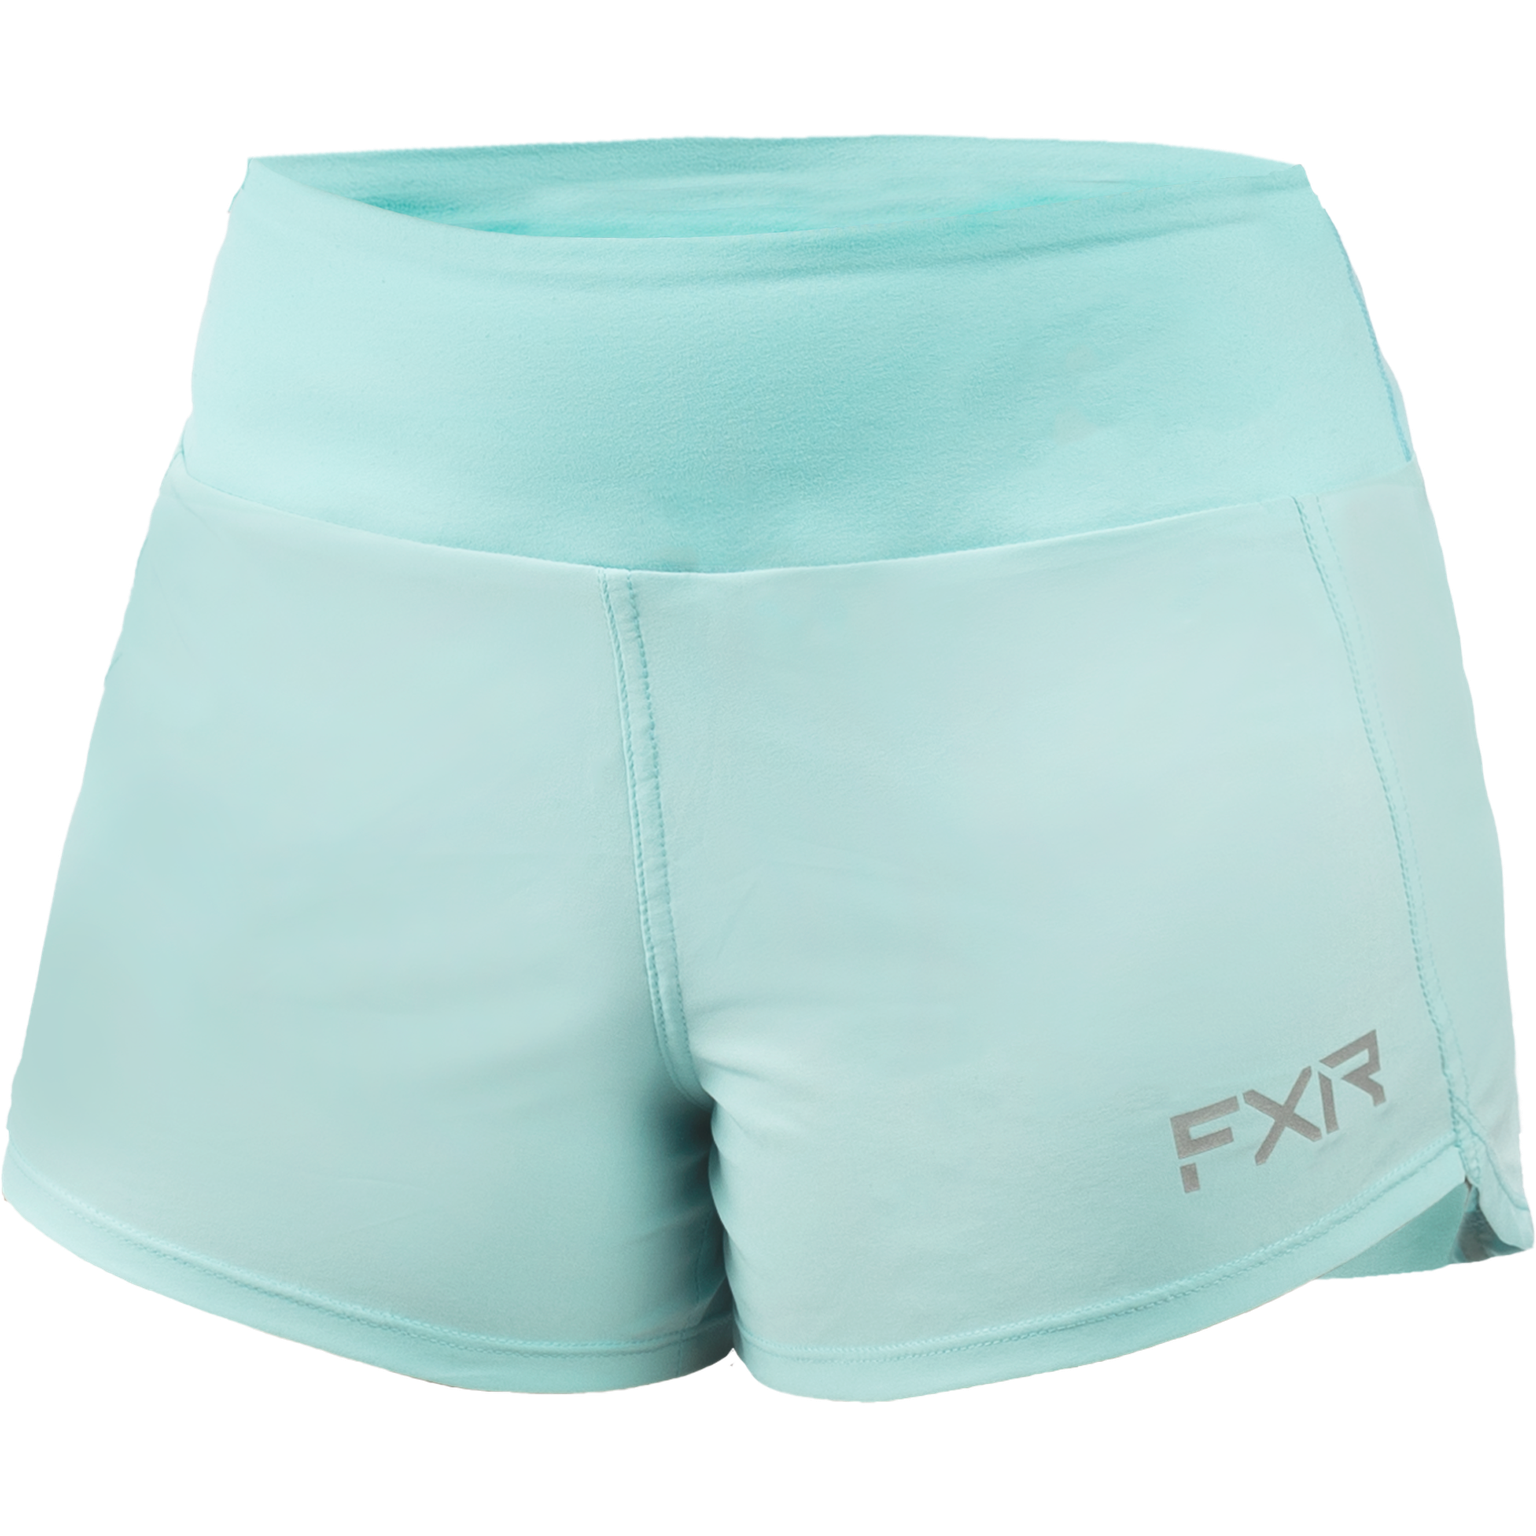 Shorts FXR W´s Coastal, Seafom/Grey